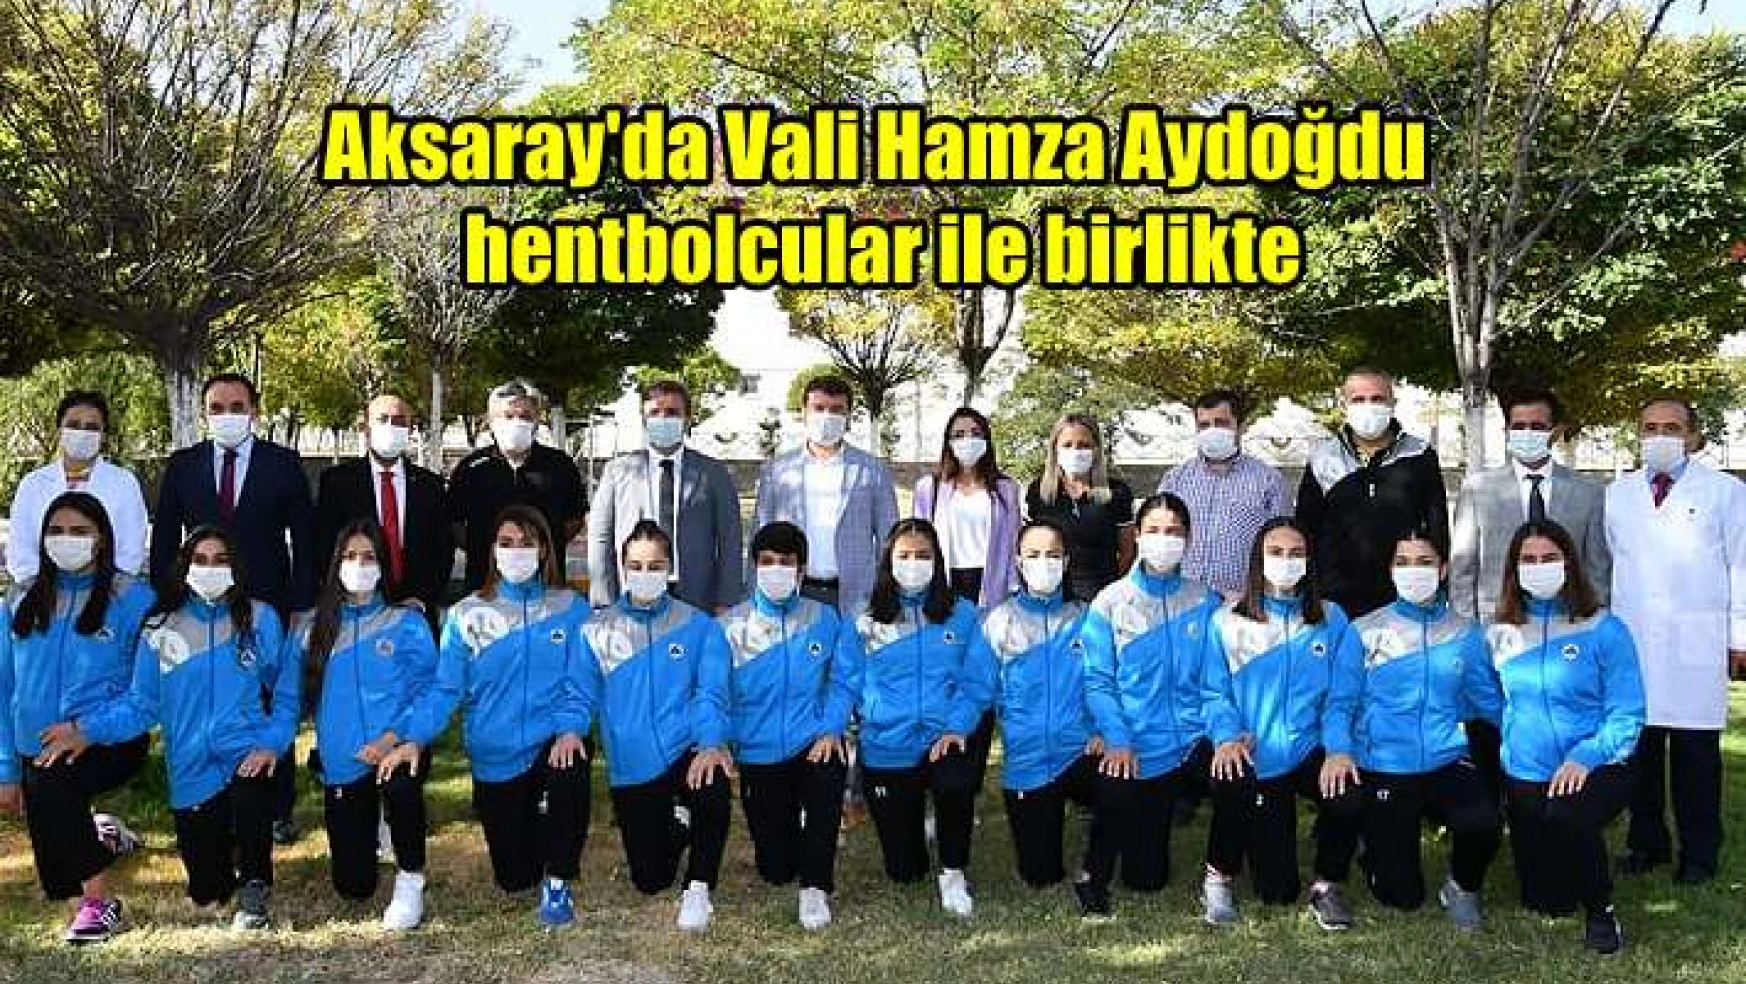 Aksaray Valisi, Belediye Başkanı hentbol takımı ile birlikte